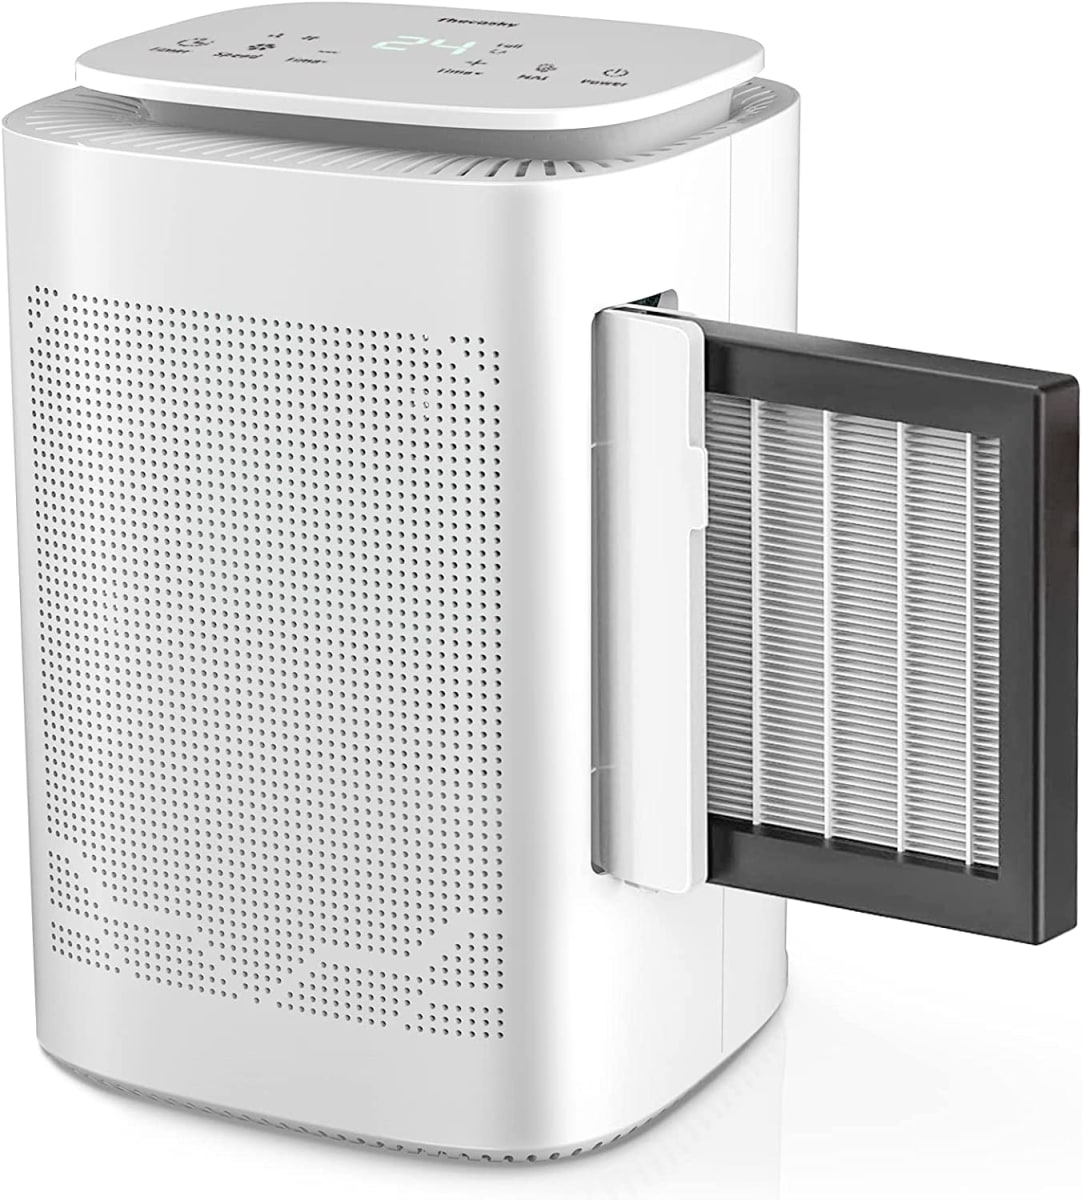 Air Dehumidifier and Air Purifier Combo